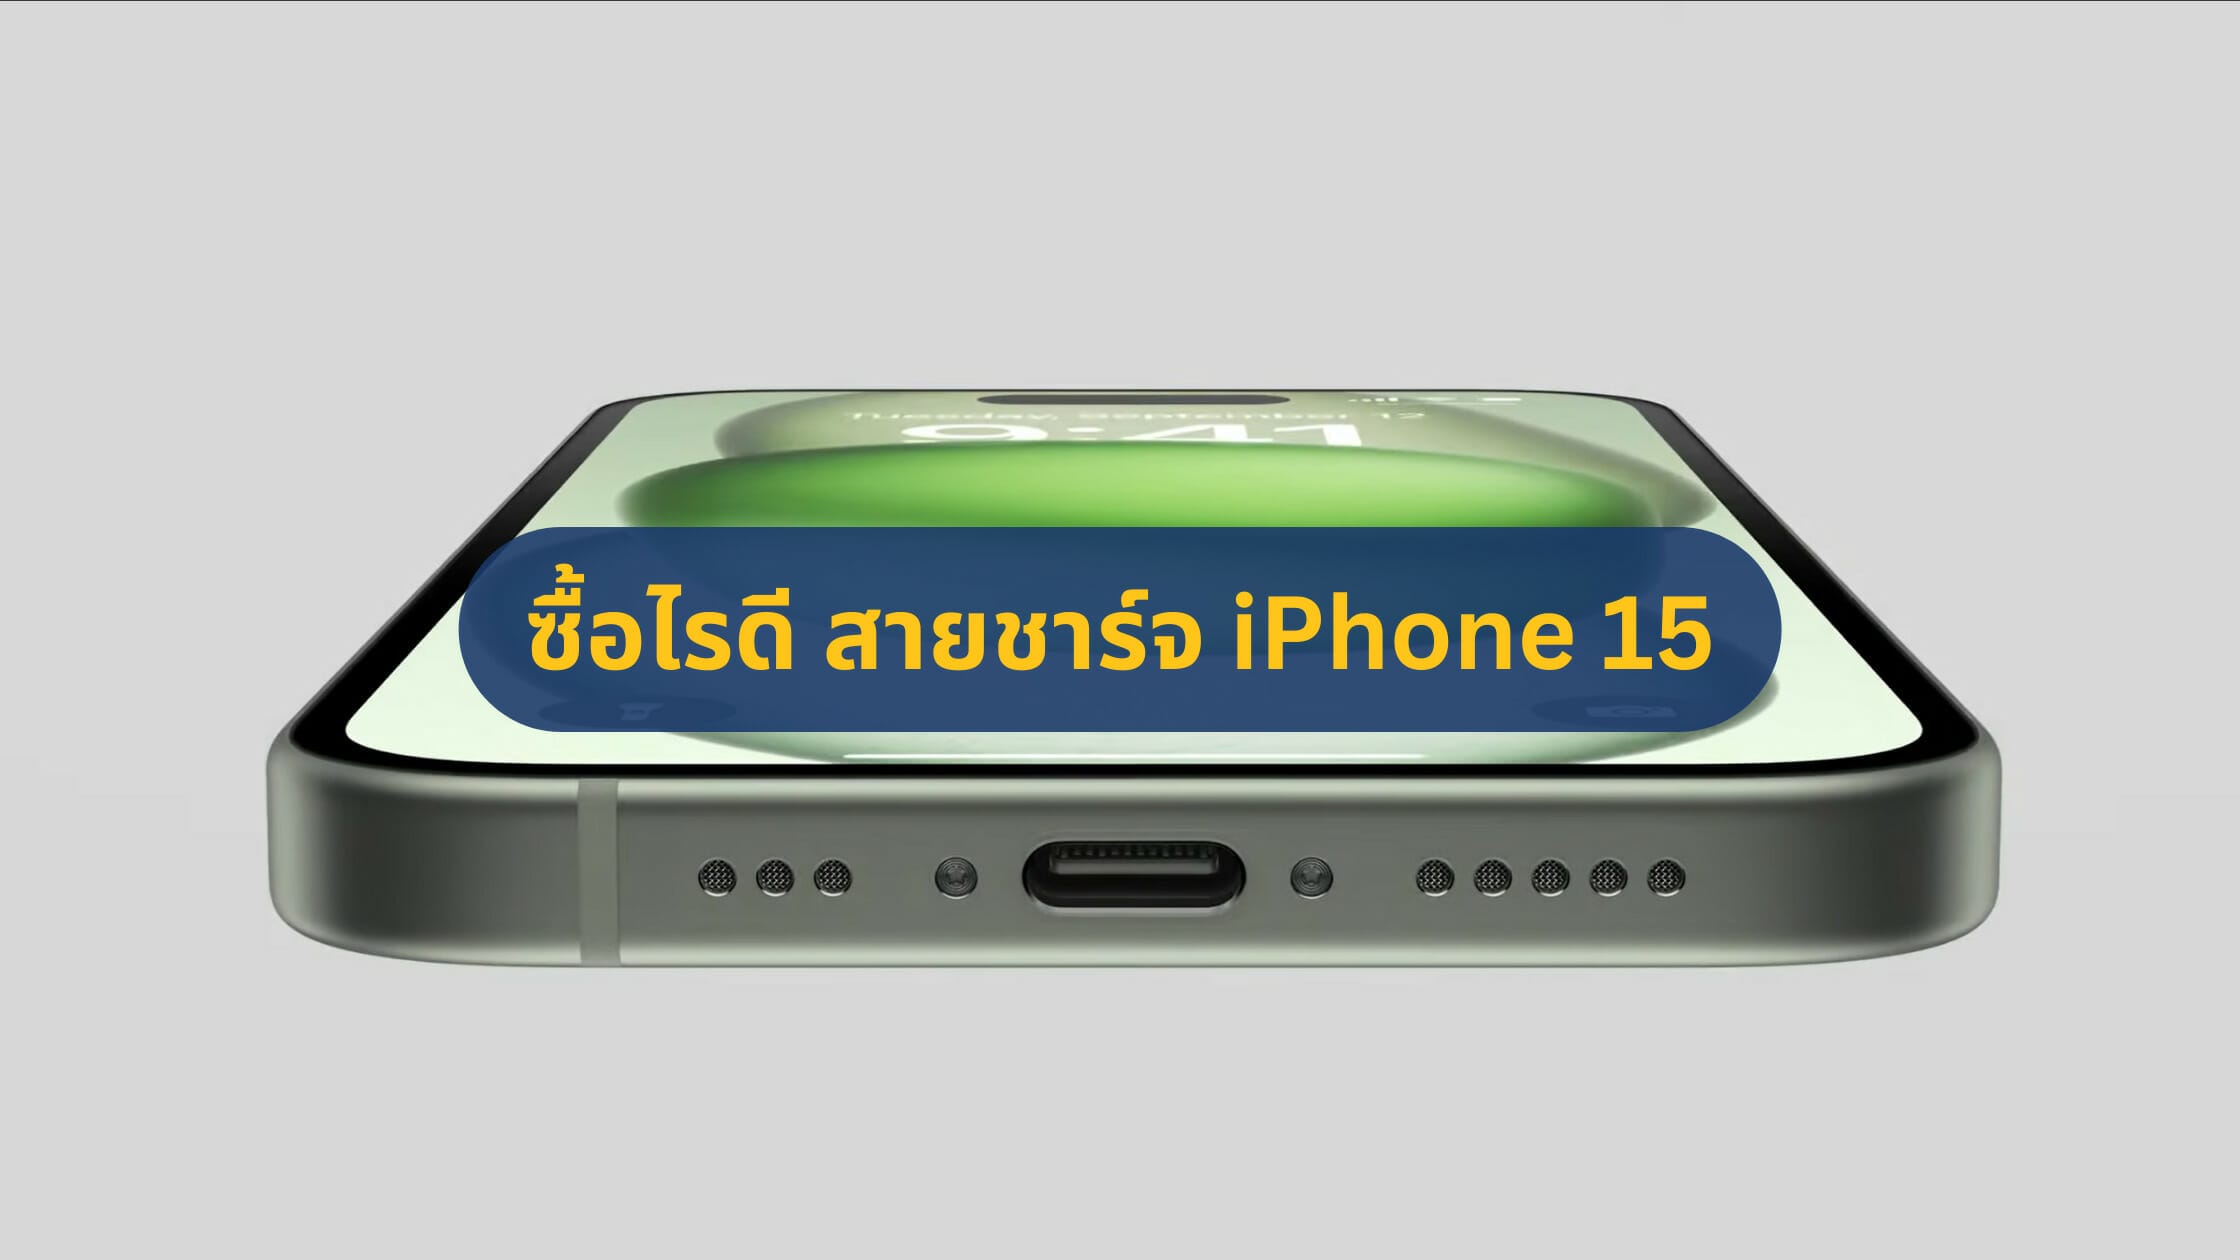 ซื้อไรดี แนะนำสายชาร์จ iPhone 15 รองรับ ชาร์จเร็ว ส่งข้อมูลไว